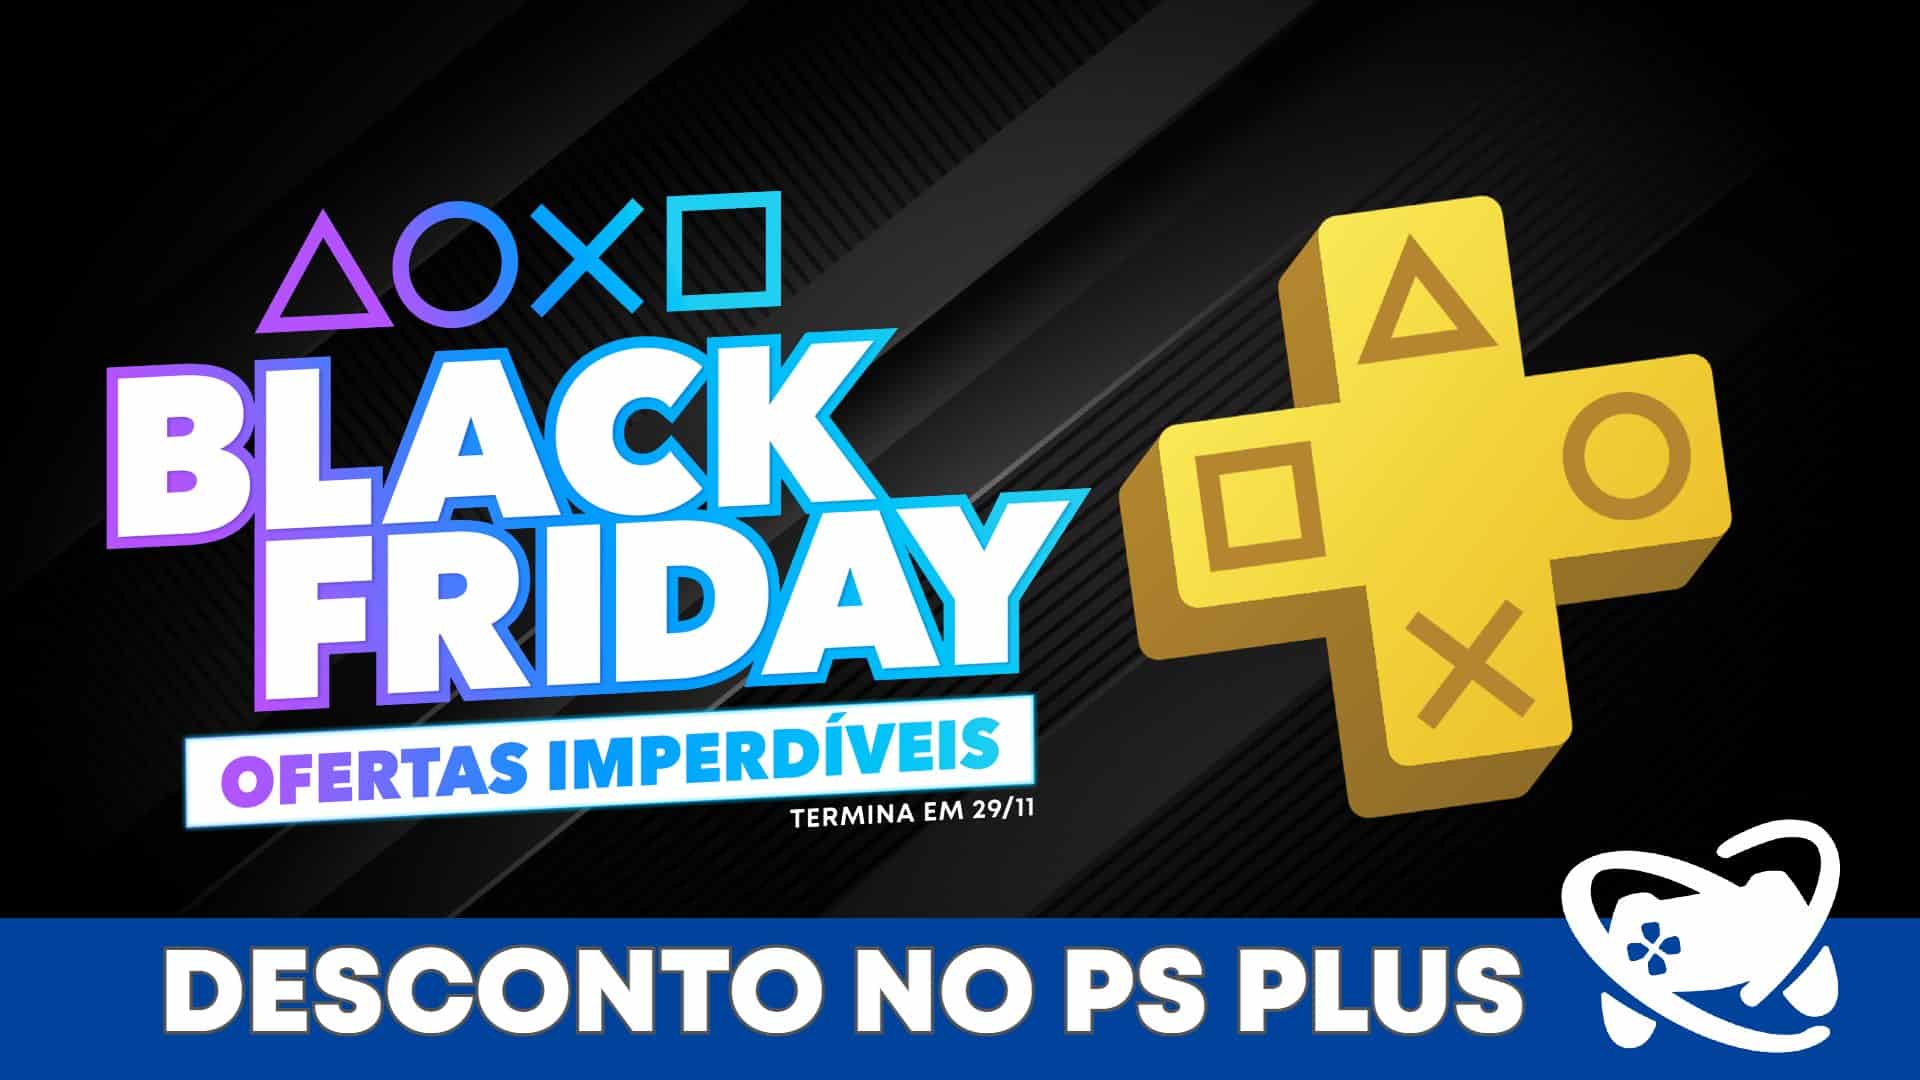 PS Store oferece desconto de 50% no plano anual da PS Plus para quem não é  assinante - PSX Brasil